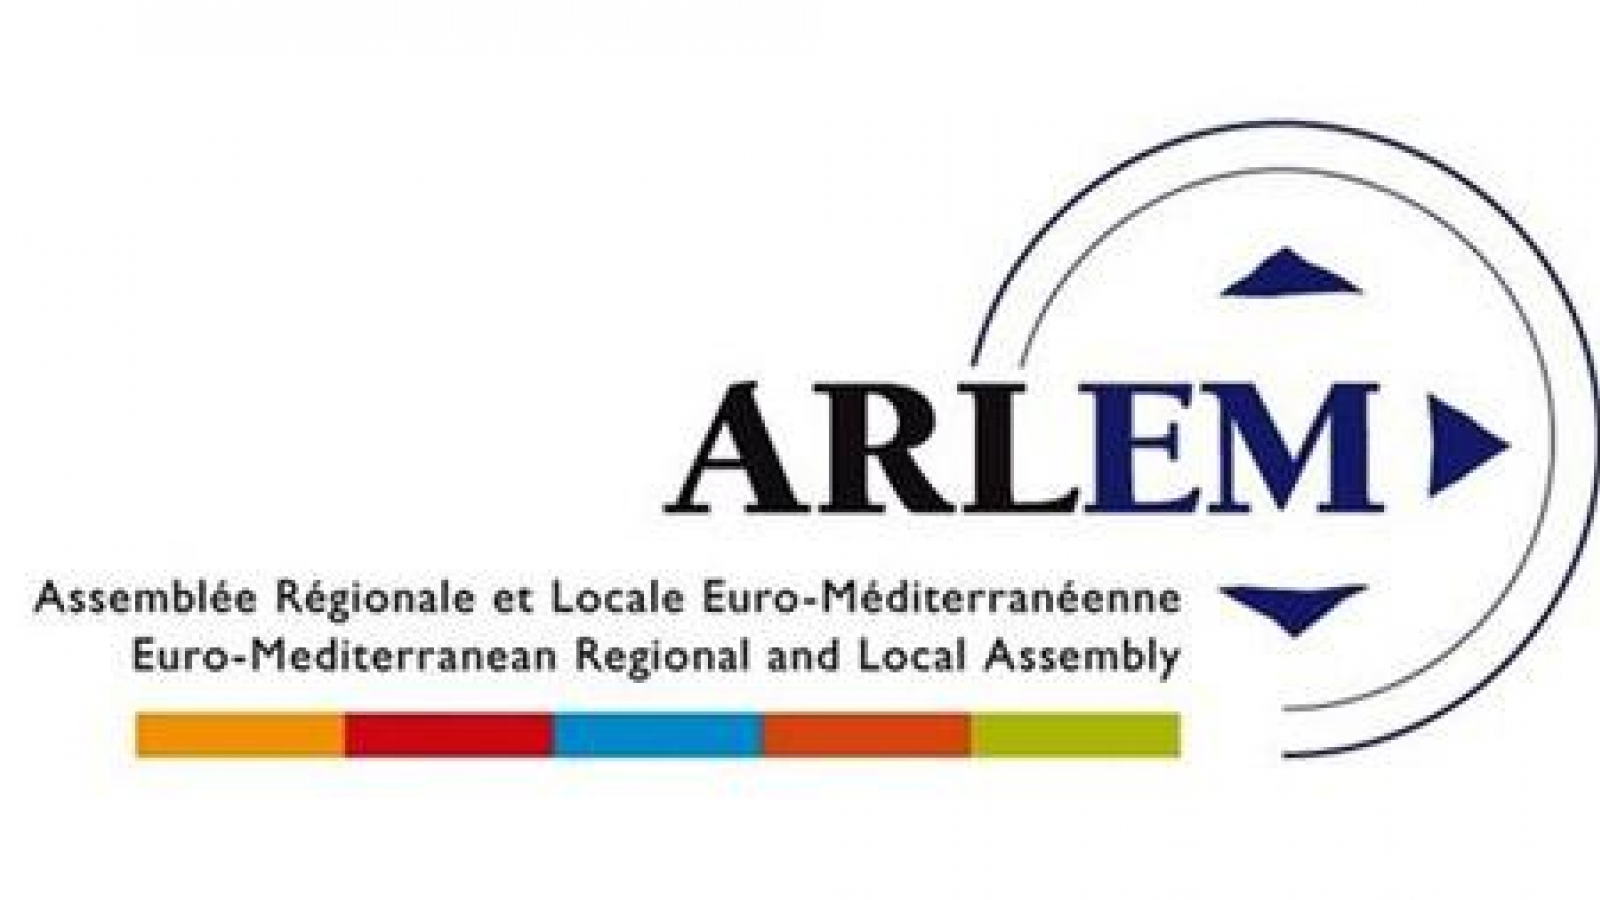 Il decimo anniversario dell'Assemblea regionale e locale del Mediterraneo si terrà nel 2019 a Siviglia